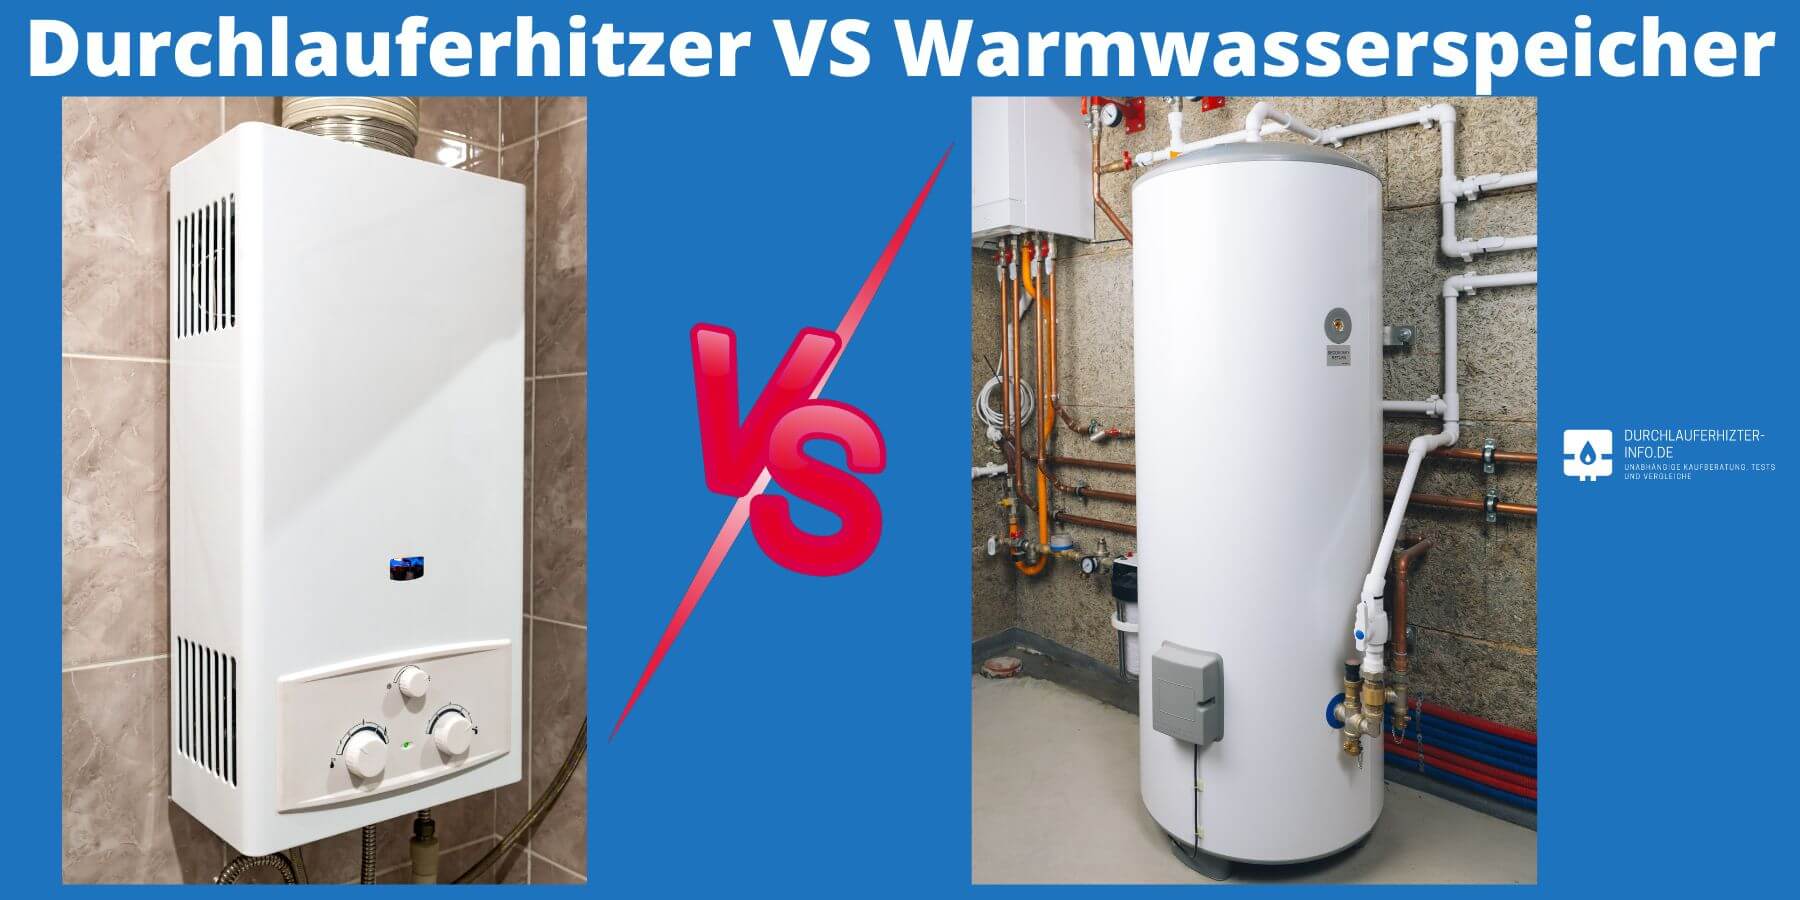 Was ist günstiger? Durchlauferhitzer oder Warmwasserspeicher?